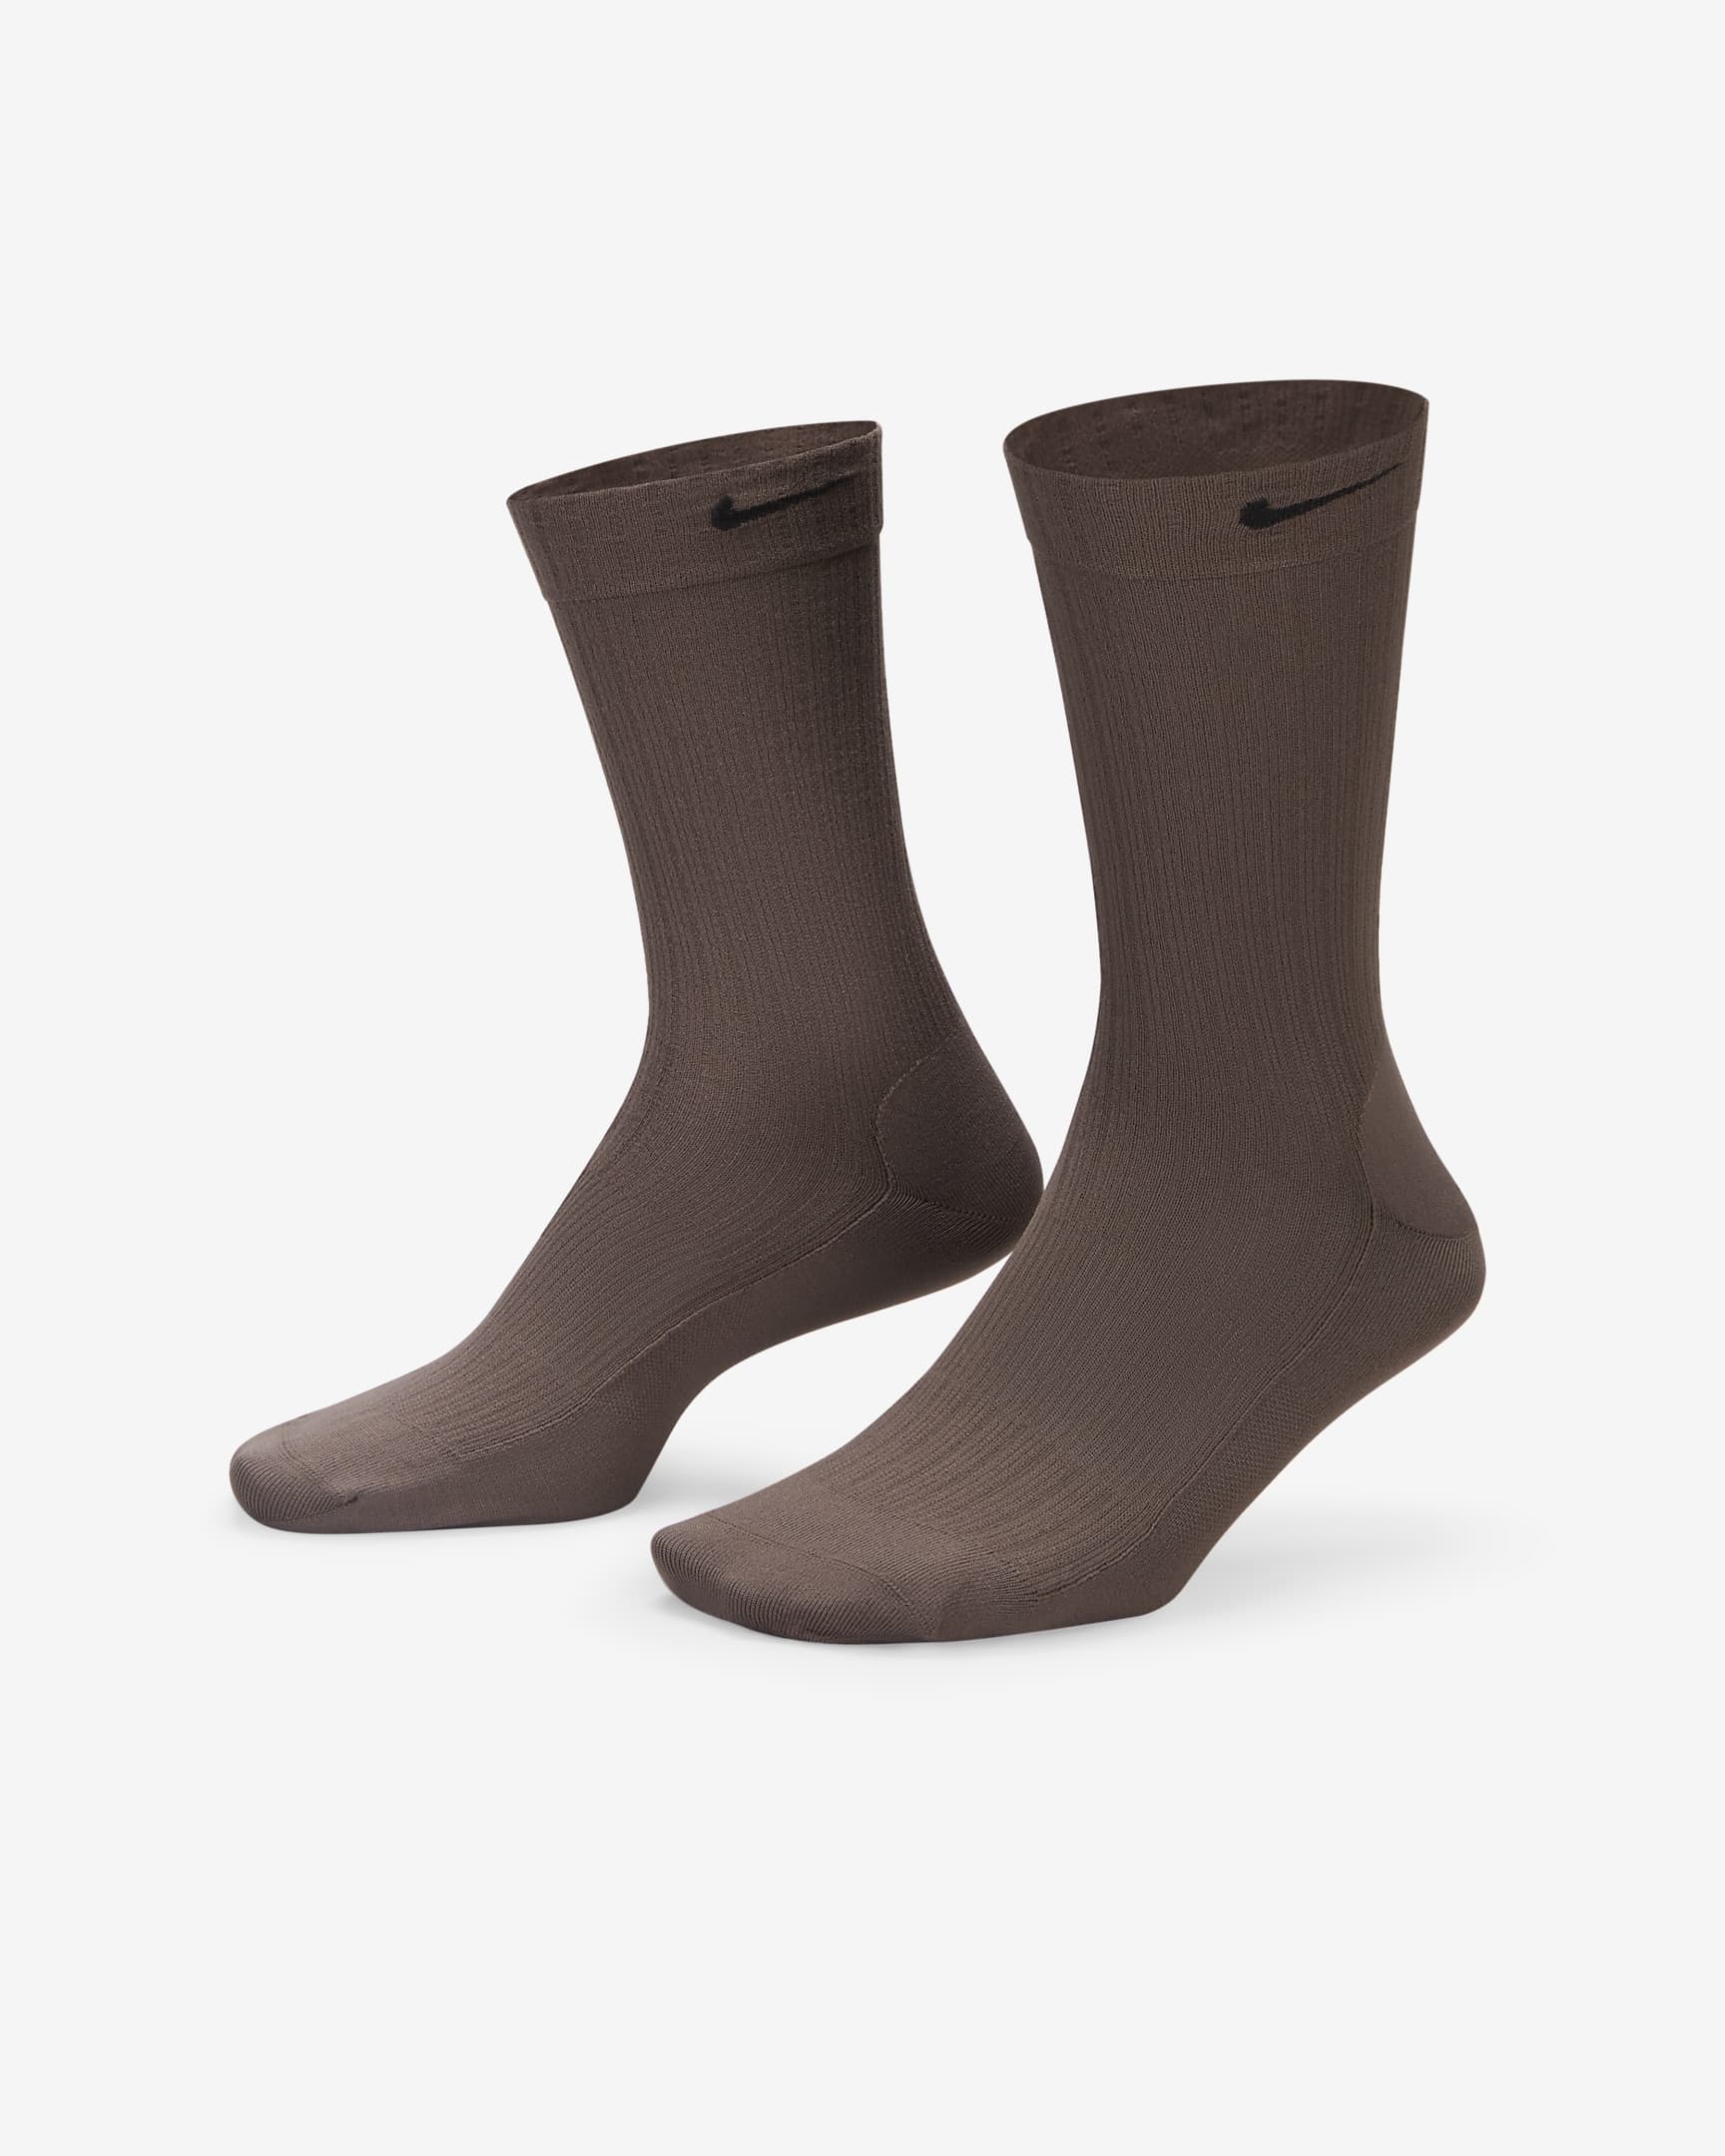 Chaussettes mi-mollet transparentes Nike pour femme (1 paire) - Ironstone/Noir